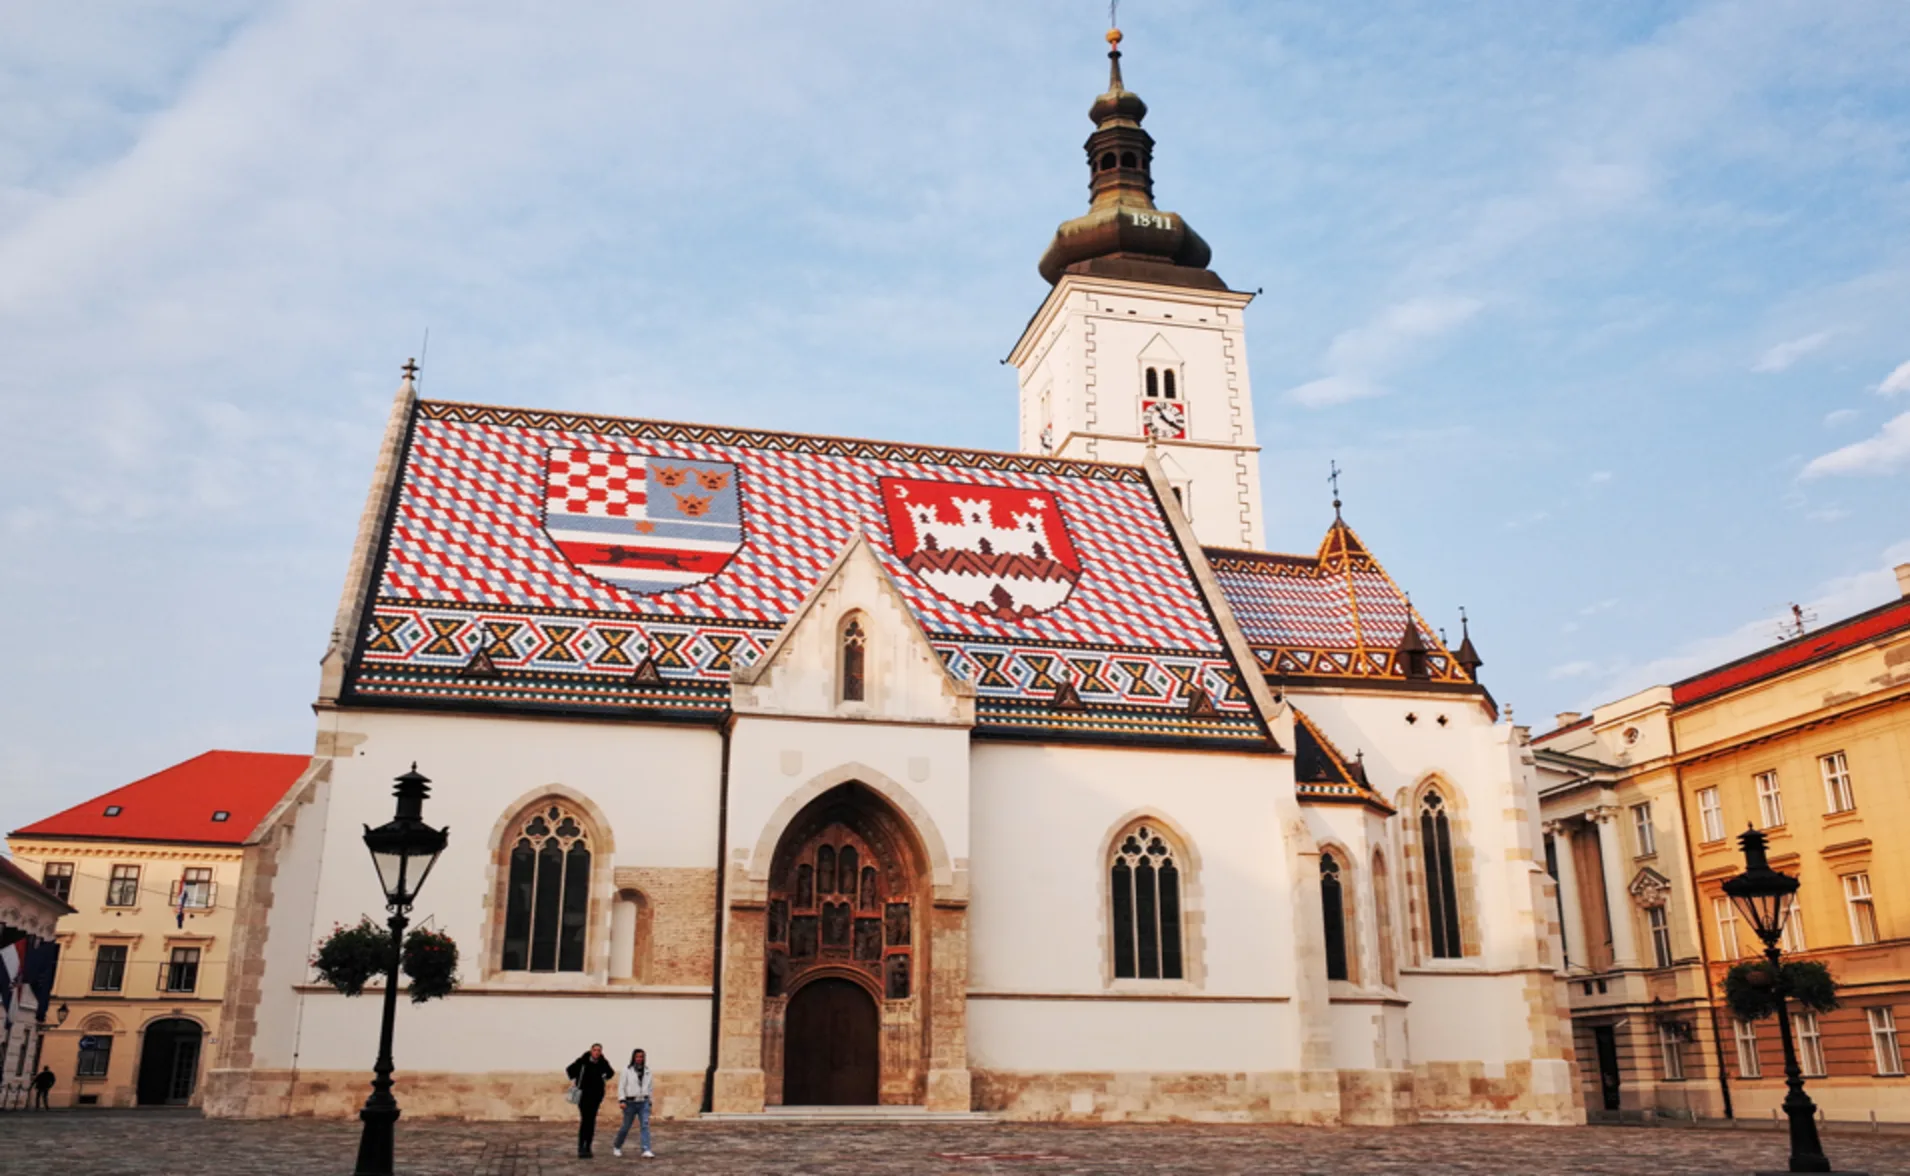 church of st mark in zagreb croatia